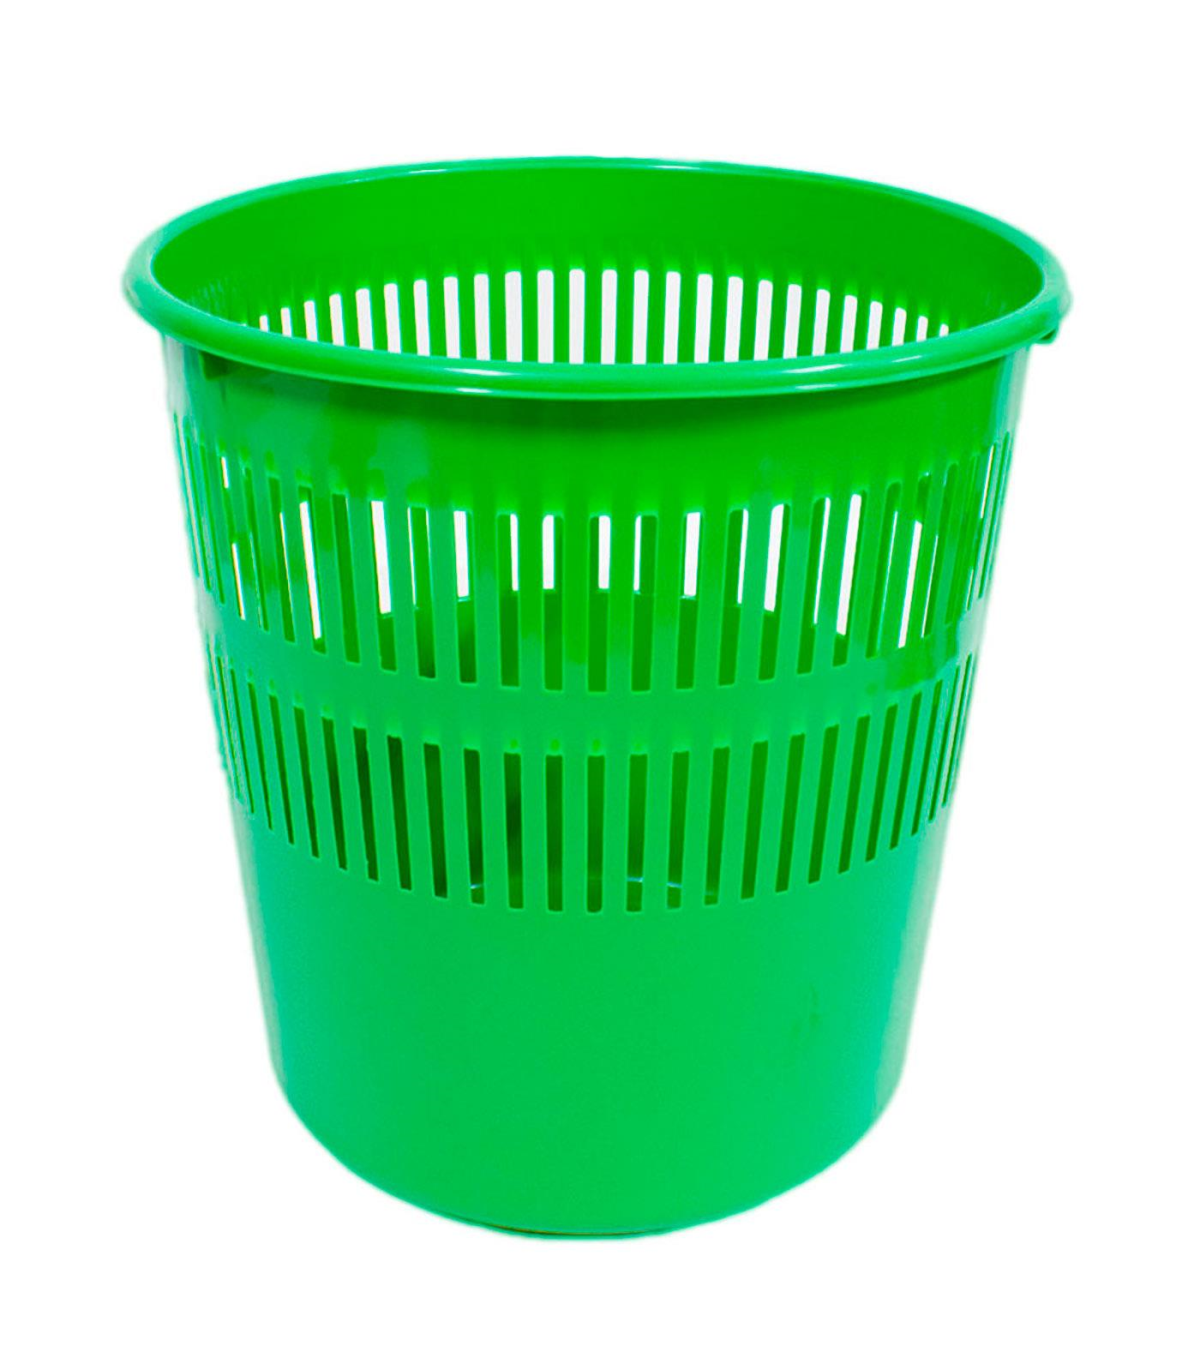 Tradineur - Papelera de plástico con tapa basculante, cubo basura ligero,  resistente, baño, cocina, oficina, fabricada en España